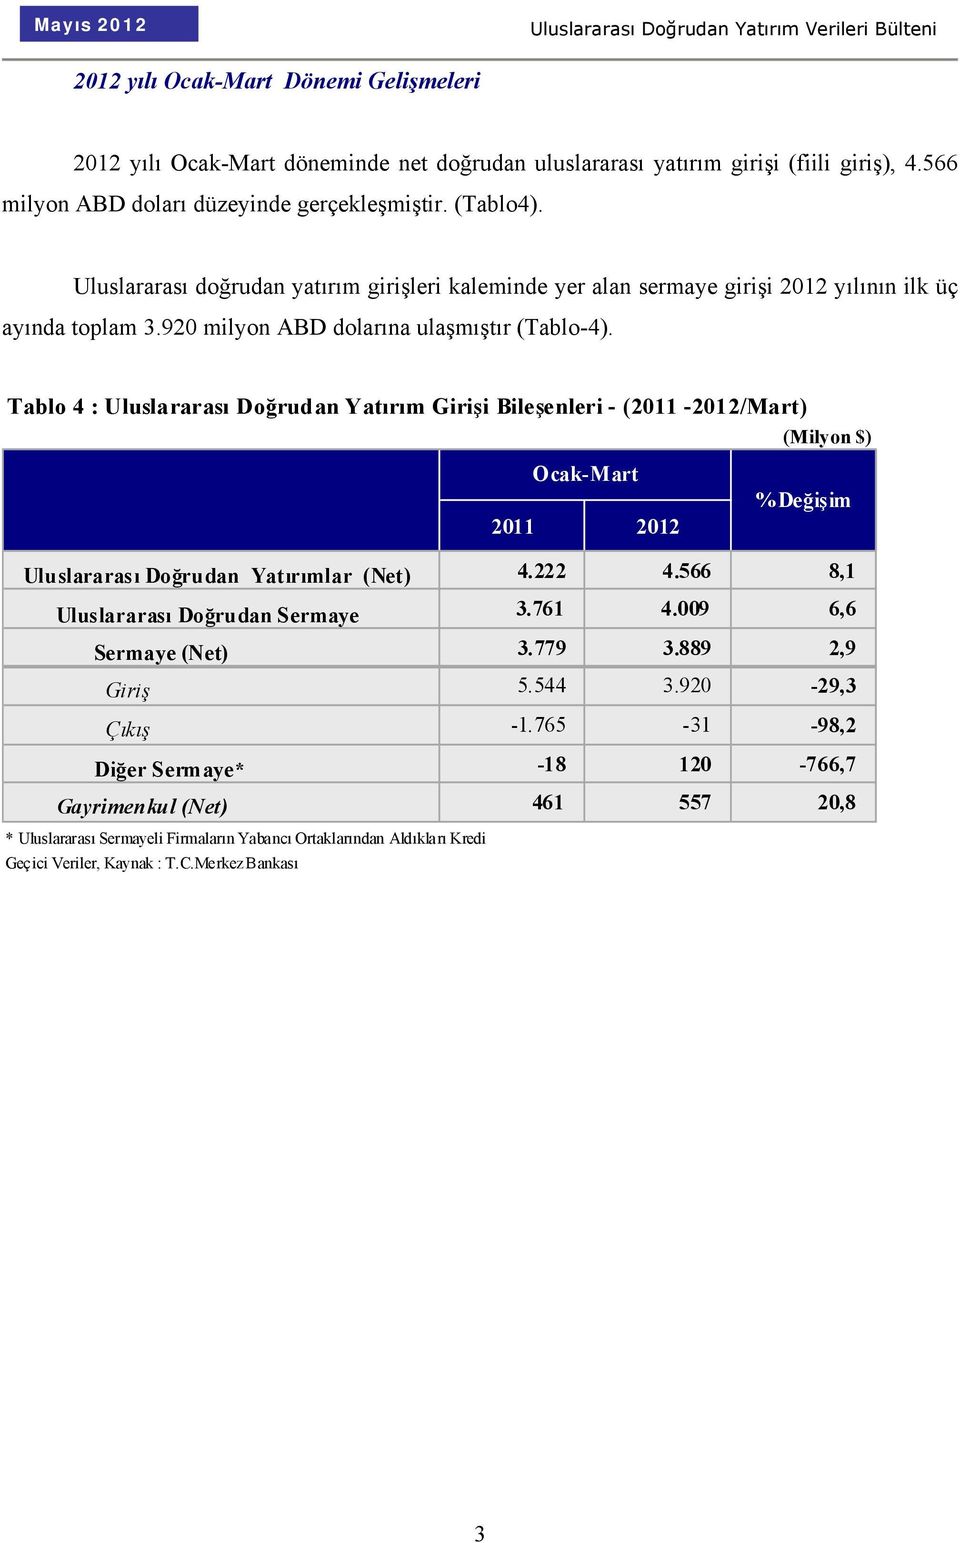 Tablo 4 : Uluslararası Doğrudan Yatırım Girişi Bileşenleri - (2011-2012/Mart) (Milyon $) Ocak-Mart 2011 2012 %Değişim Uluslararası Doğrudan Yatırımlar (Net) 4.222 4.